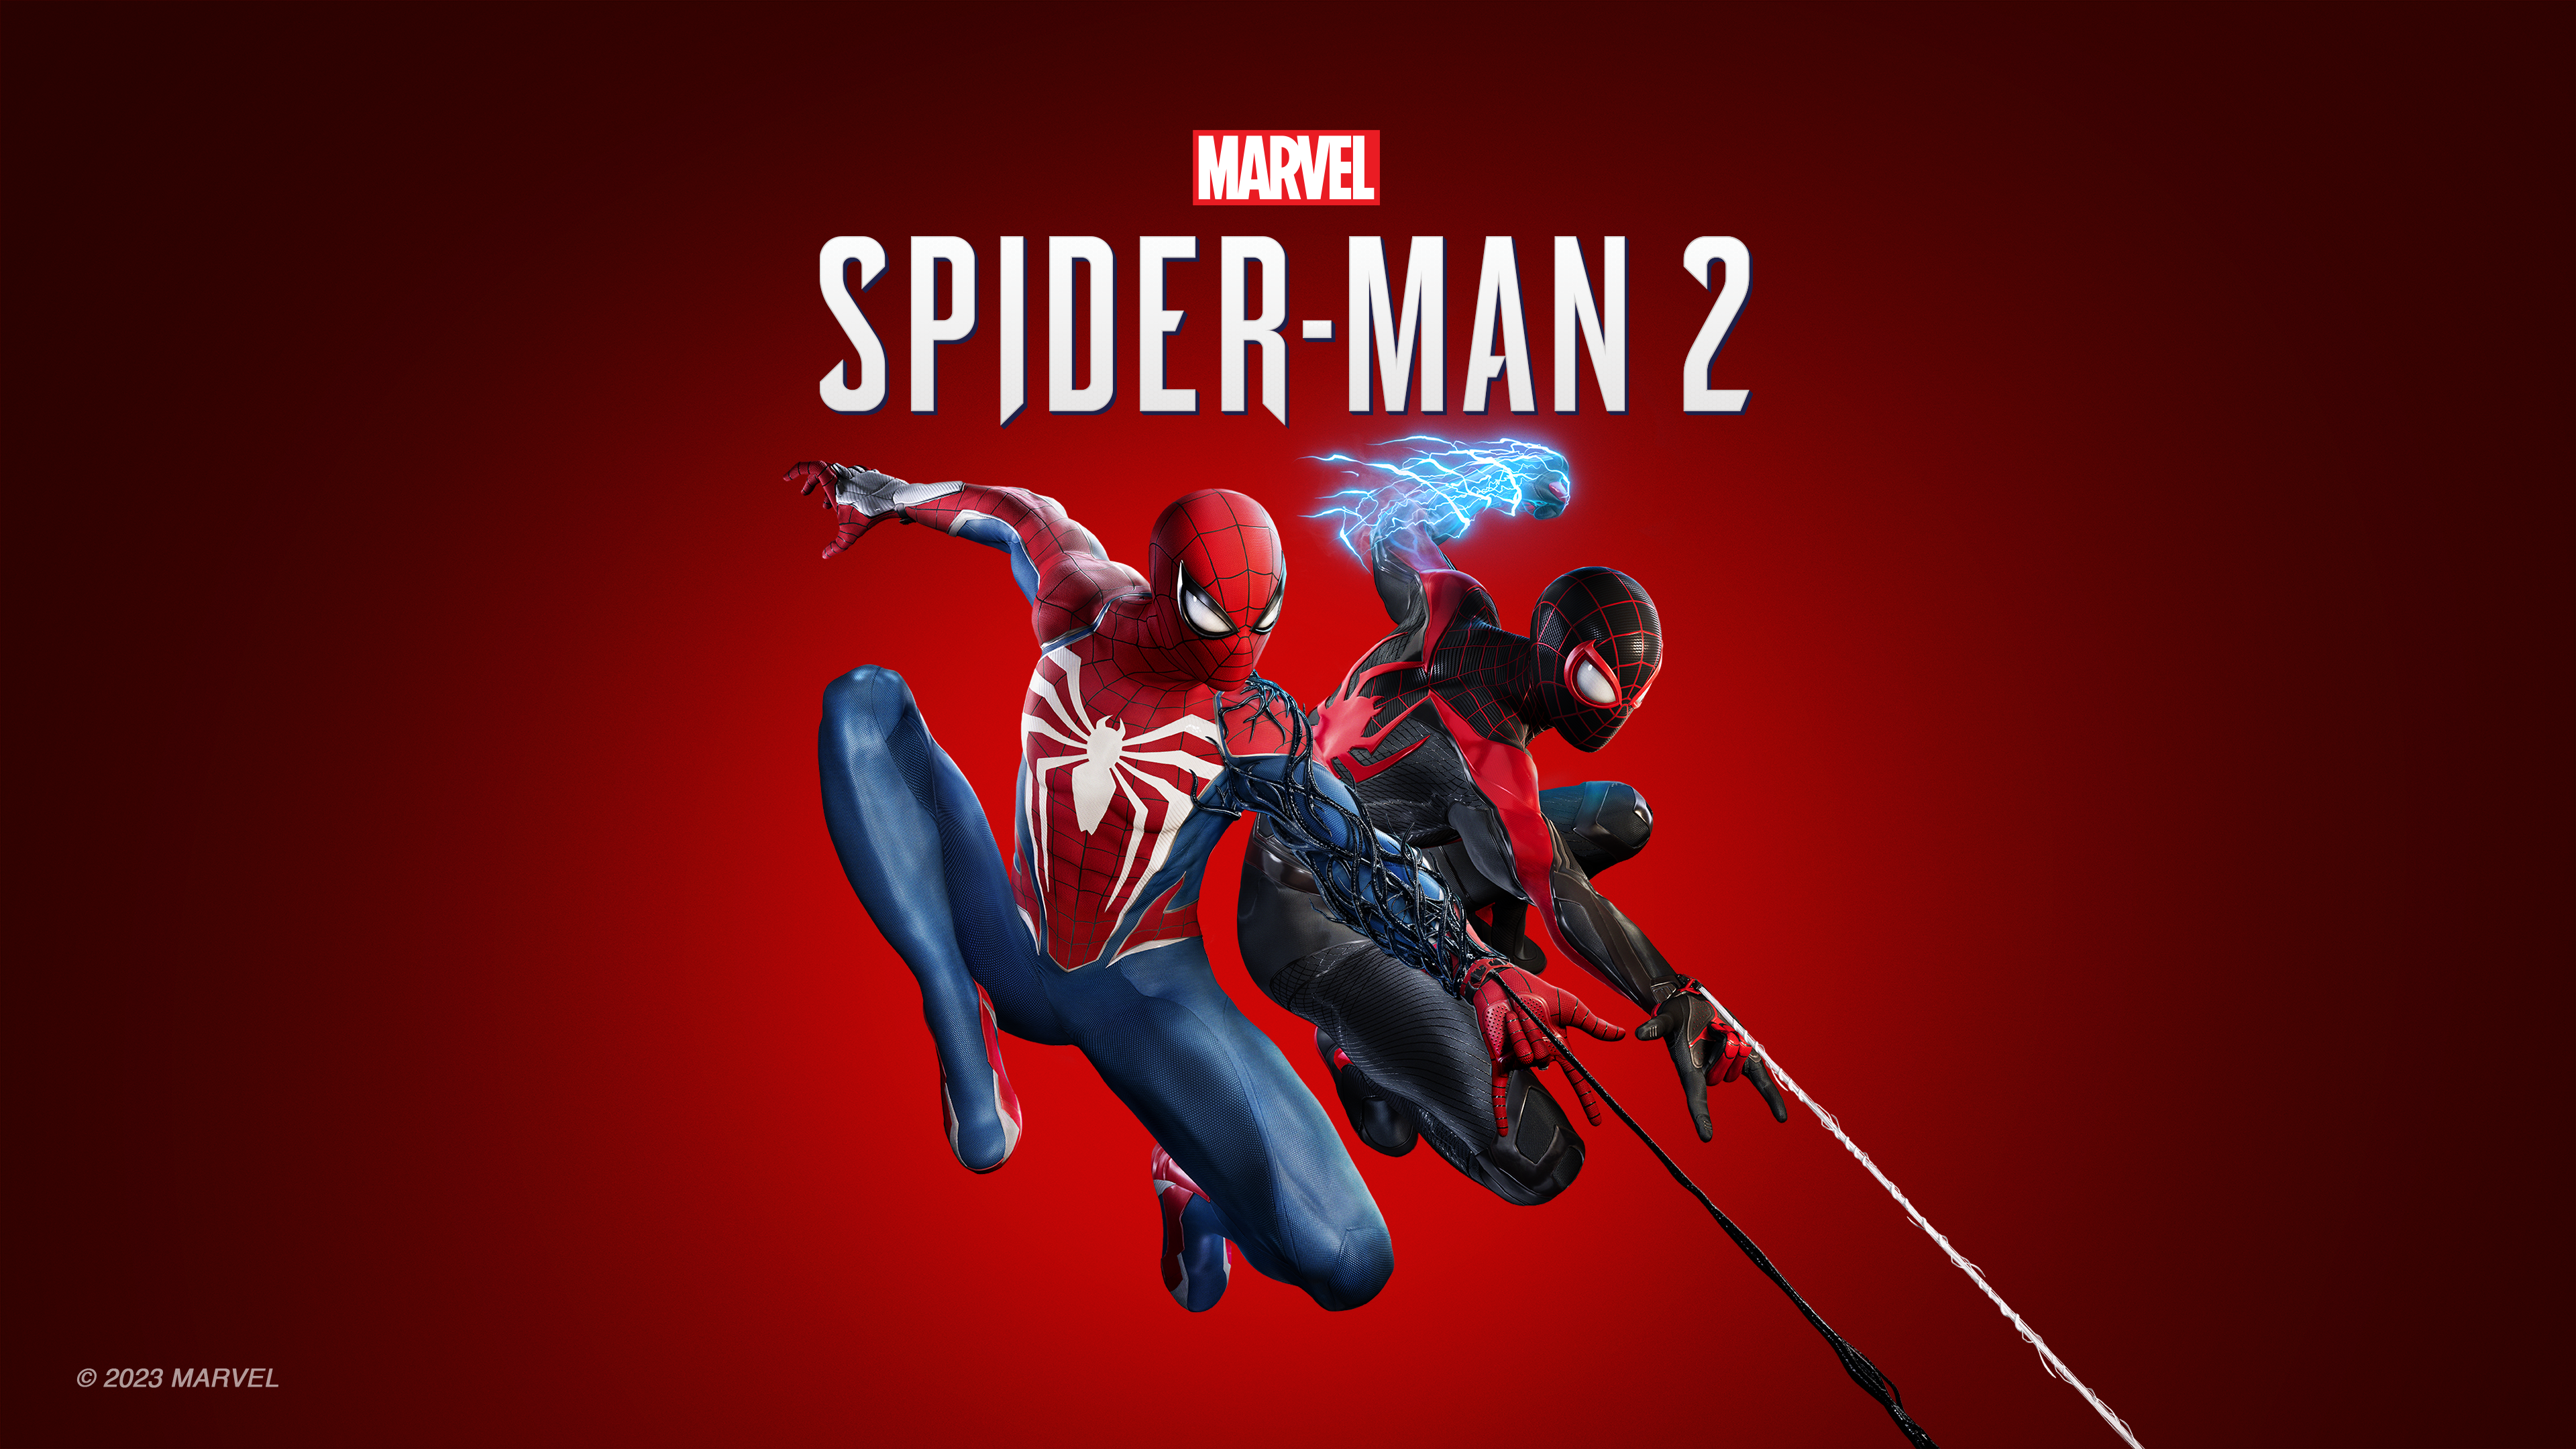 Marvel's Spider-Man: Miles Morales chegará ao PC em 18 de novembro